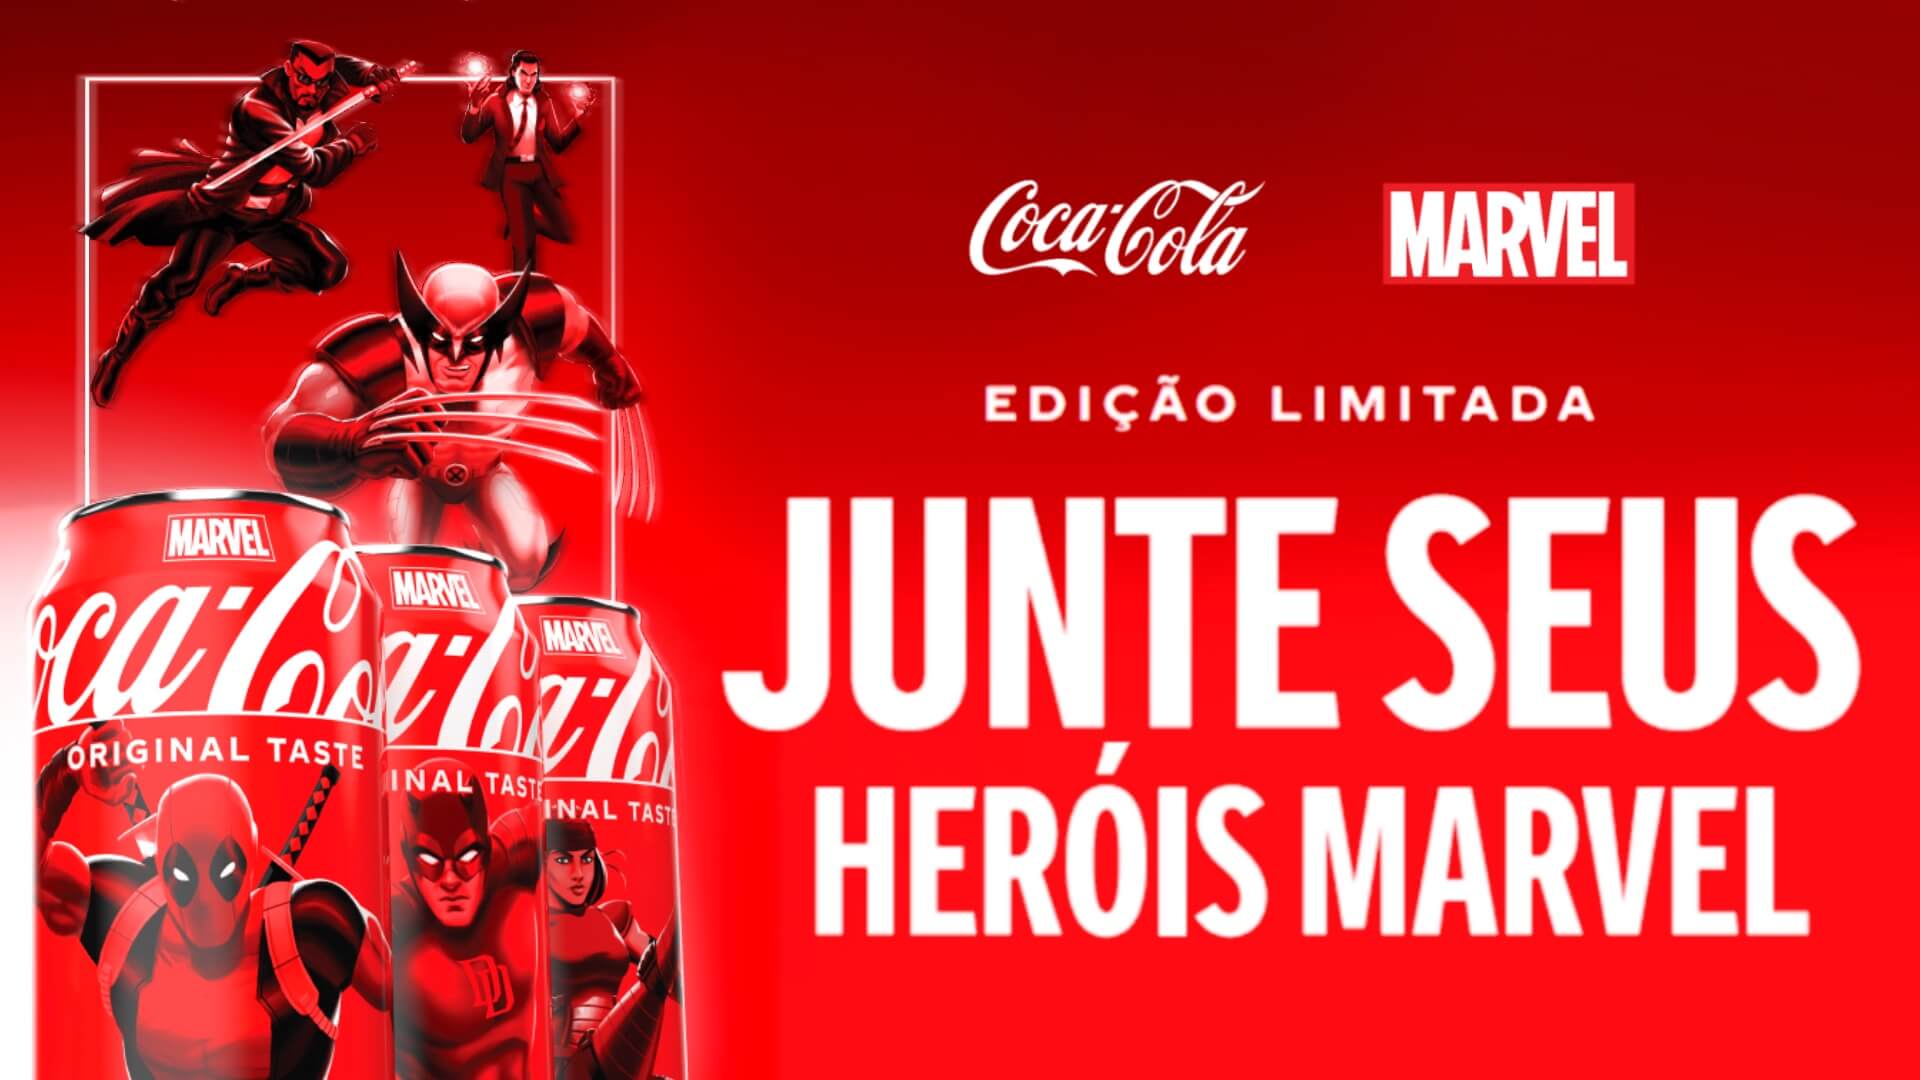 Coca-Cola e Disney lançam coleção de latas e garrafas com personagens do Universo Marvel